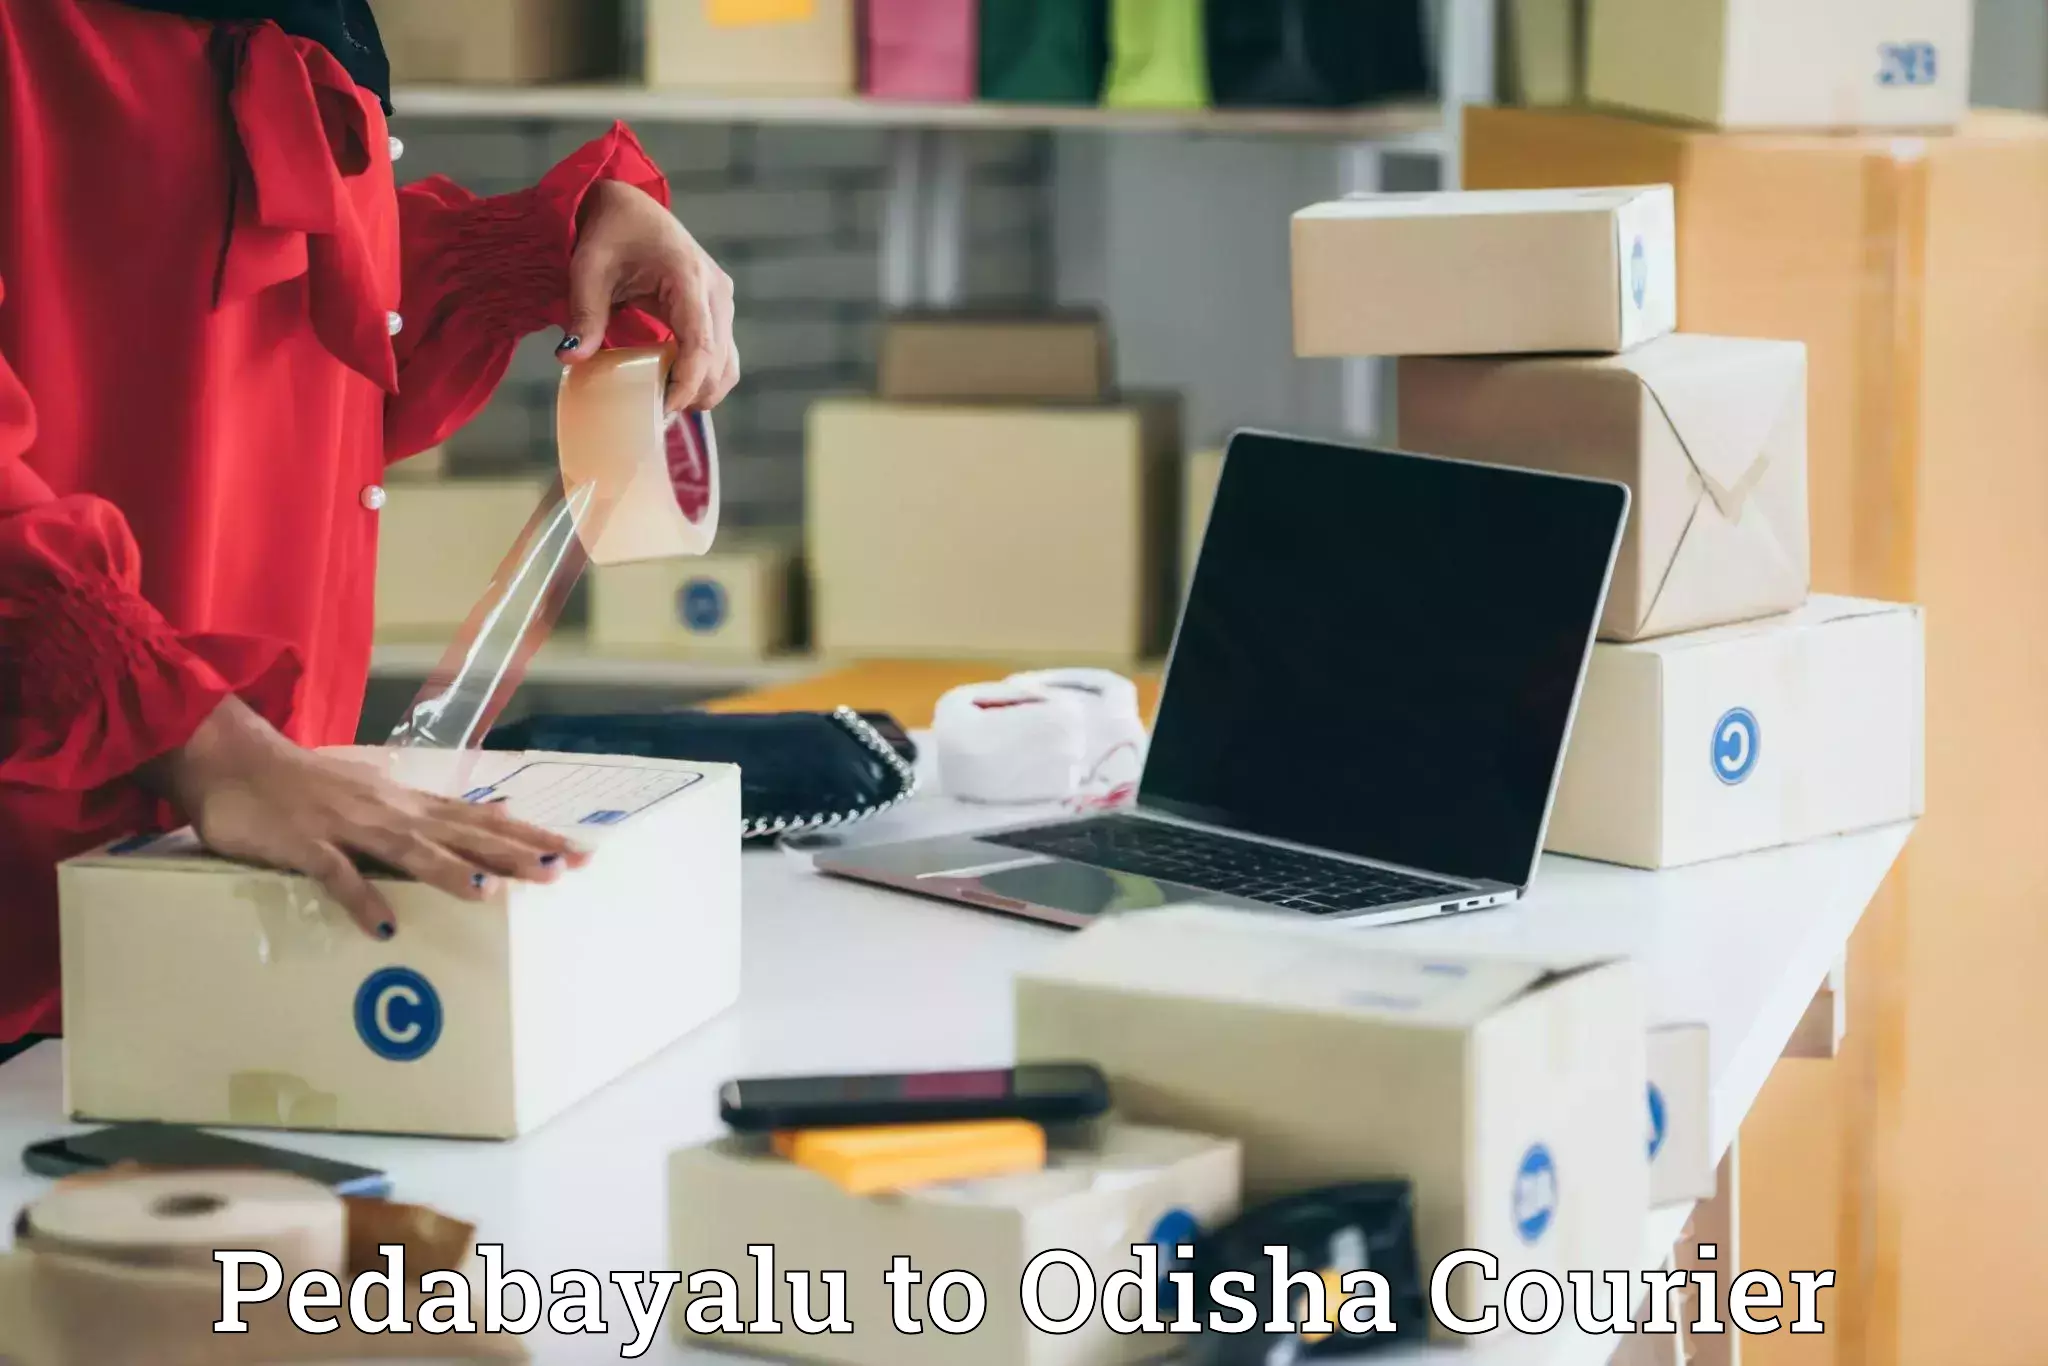 Full-service courier options Pedabayalu to Mathili